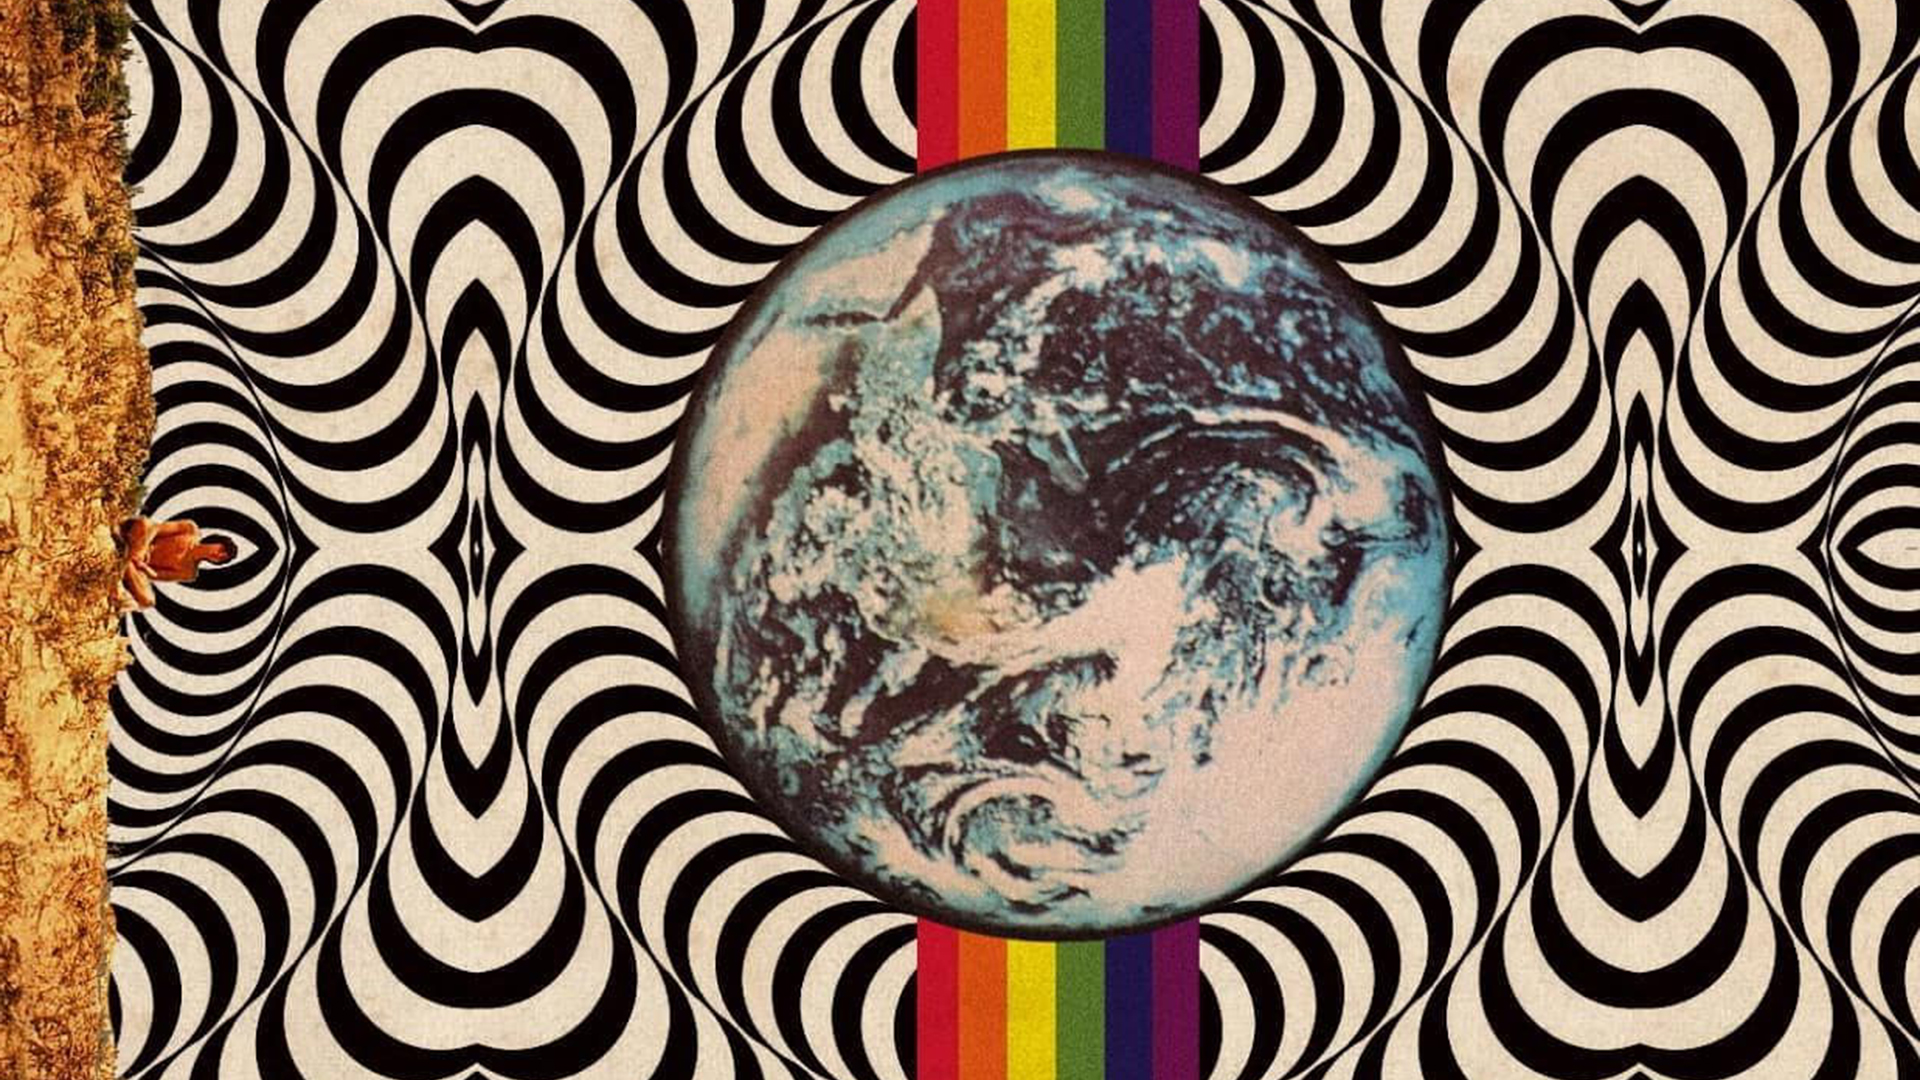 Bạn yêu thích những thiết kế psychedelic của những năm 70 và muốn tìm kiếm một bức ảnh nền máy tính đầy sáng tạo? Nhấp chuột vào bức ảnh này và khám phá một thế giới mới, nơi những hình ảnh táo bạo và nhiều màu sắc tuyệt đẹp đang chờ đón bạn.